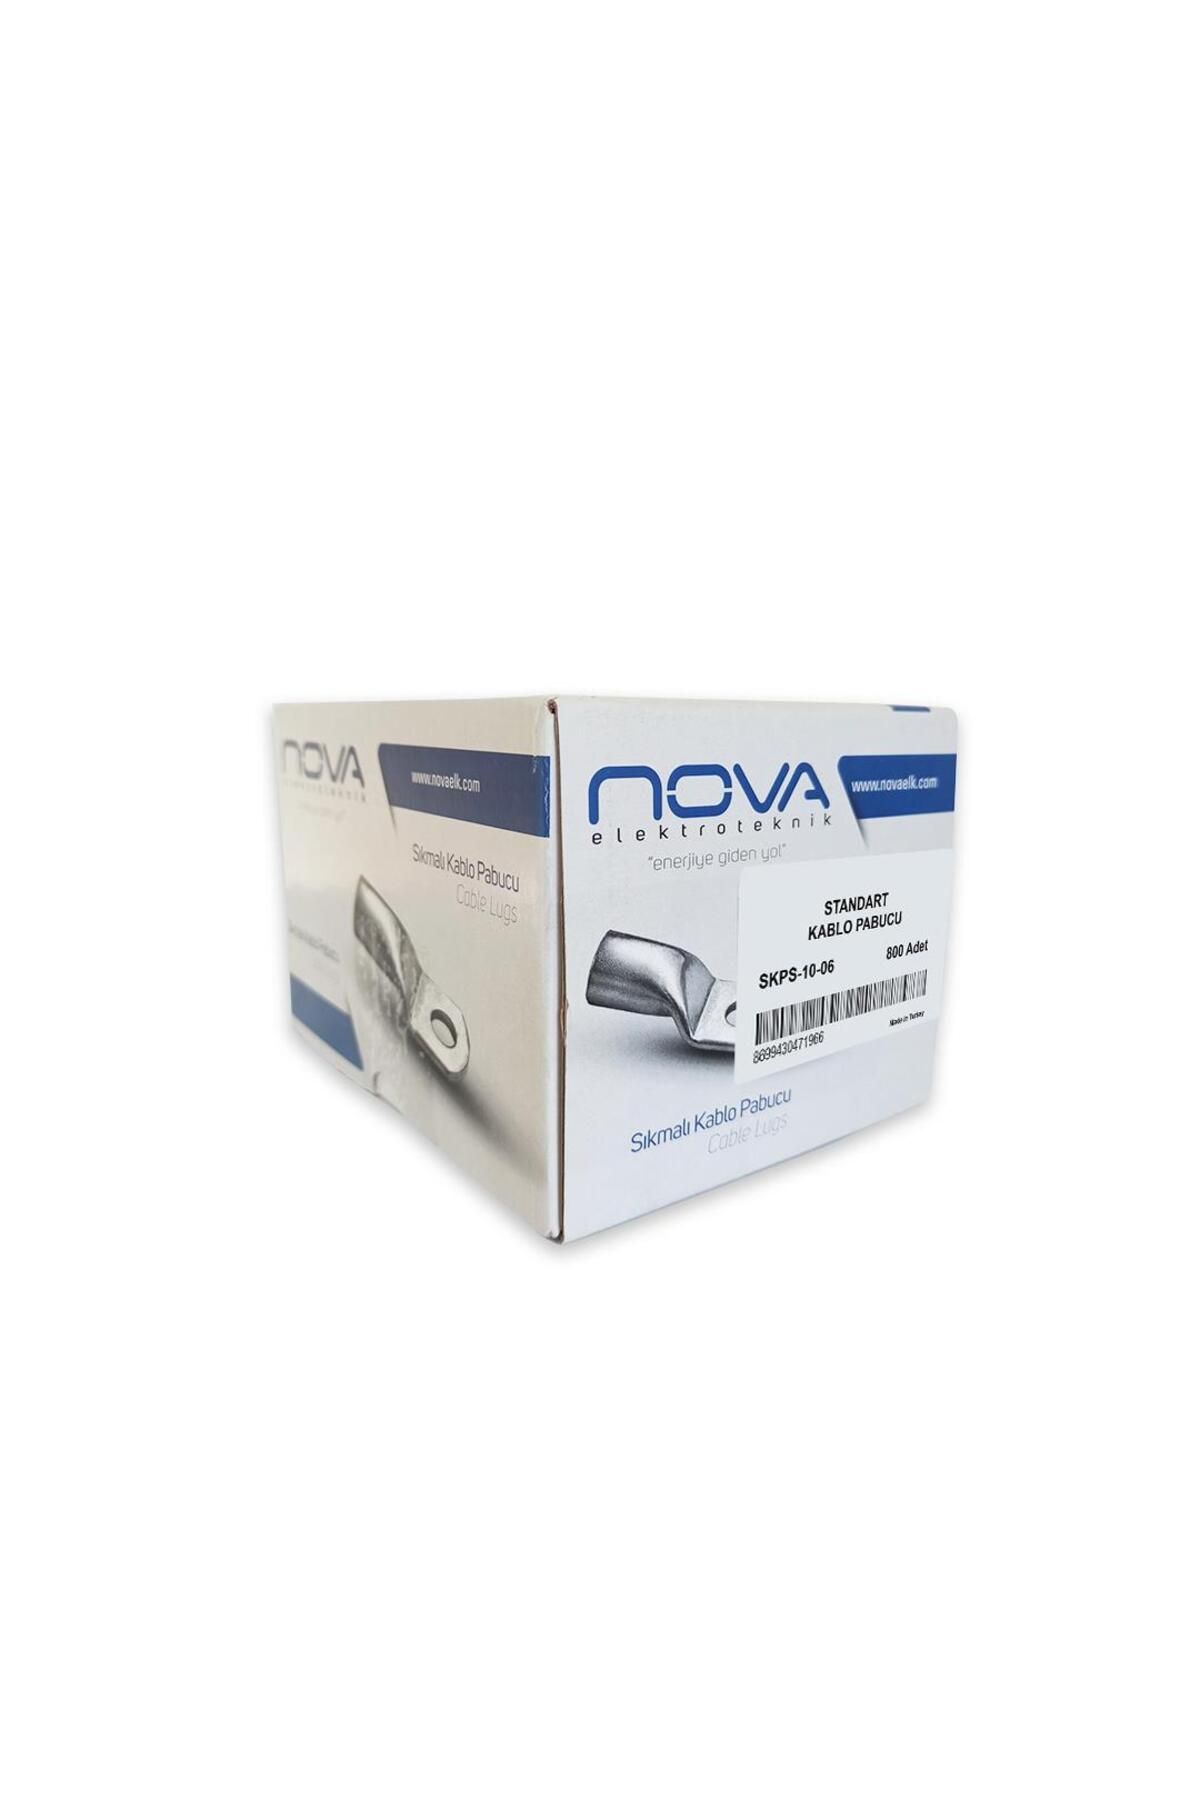 Nova 10mm (M6) Standart Kablo Pabucu ( 25 Adet )